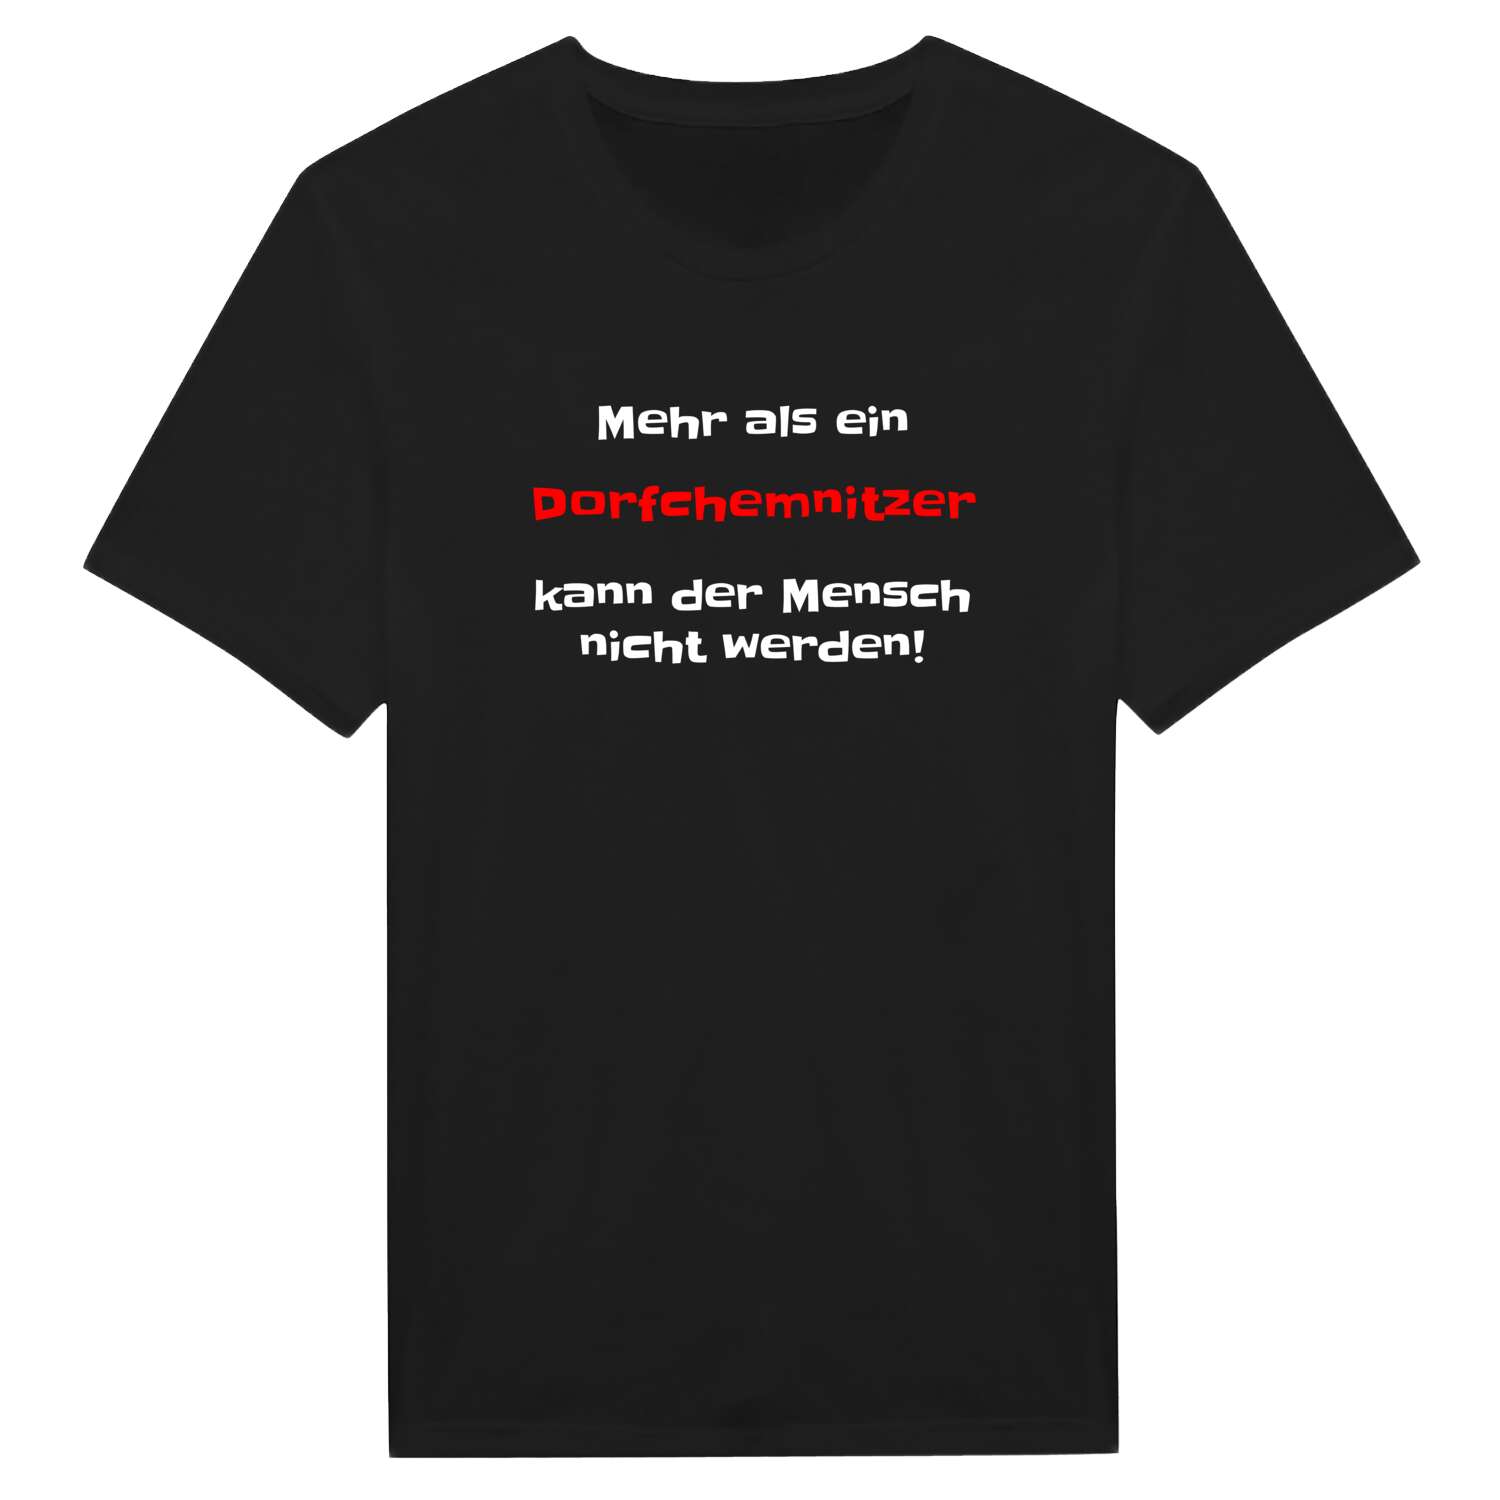 Dorfchemnitz T-Shirt »Mehr als ein«